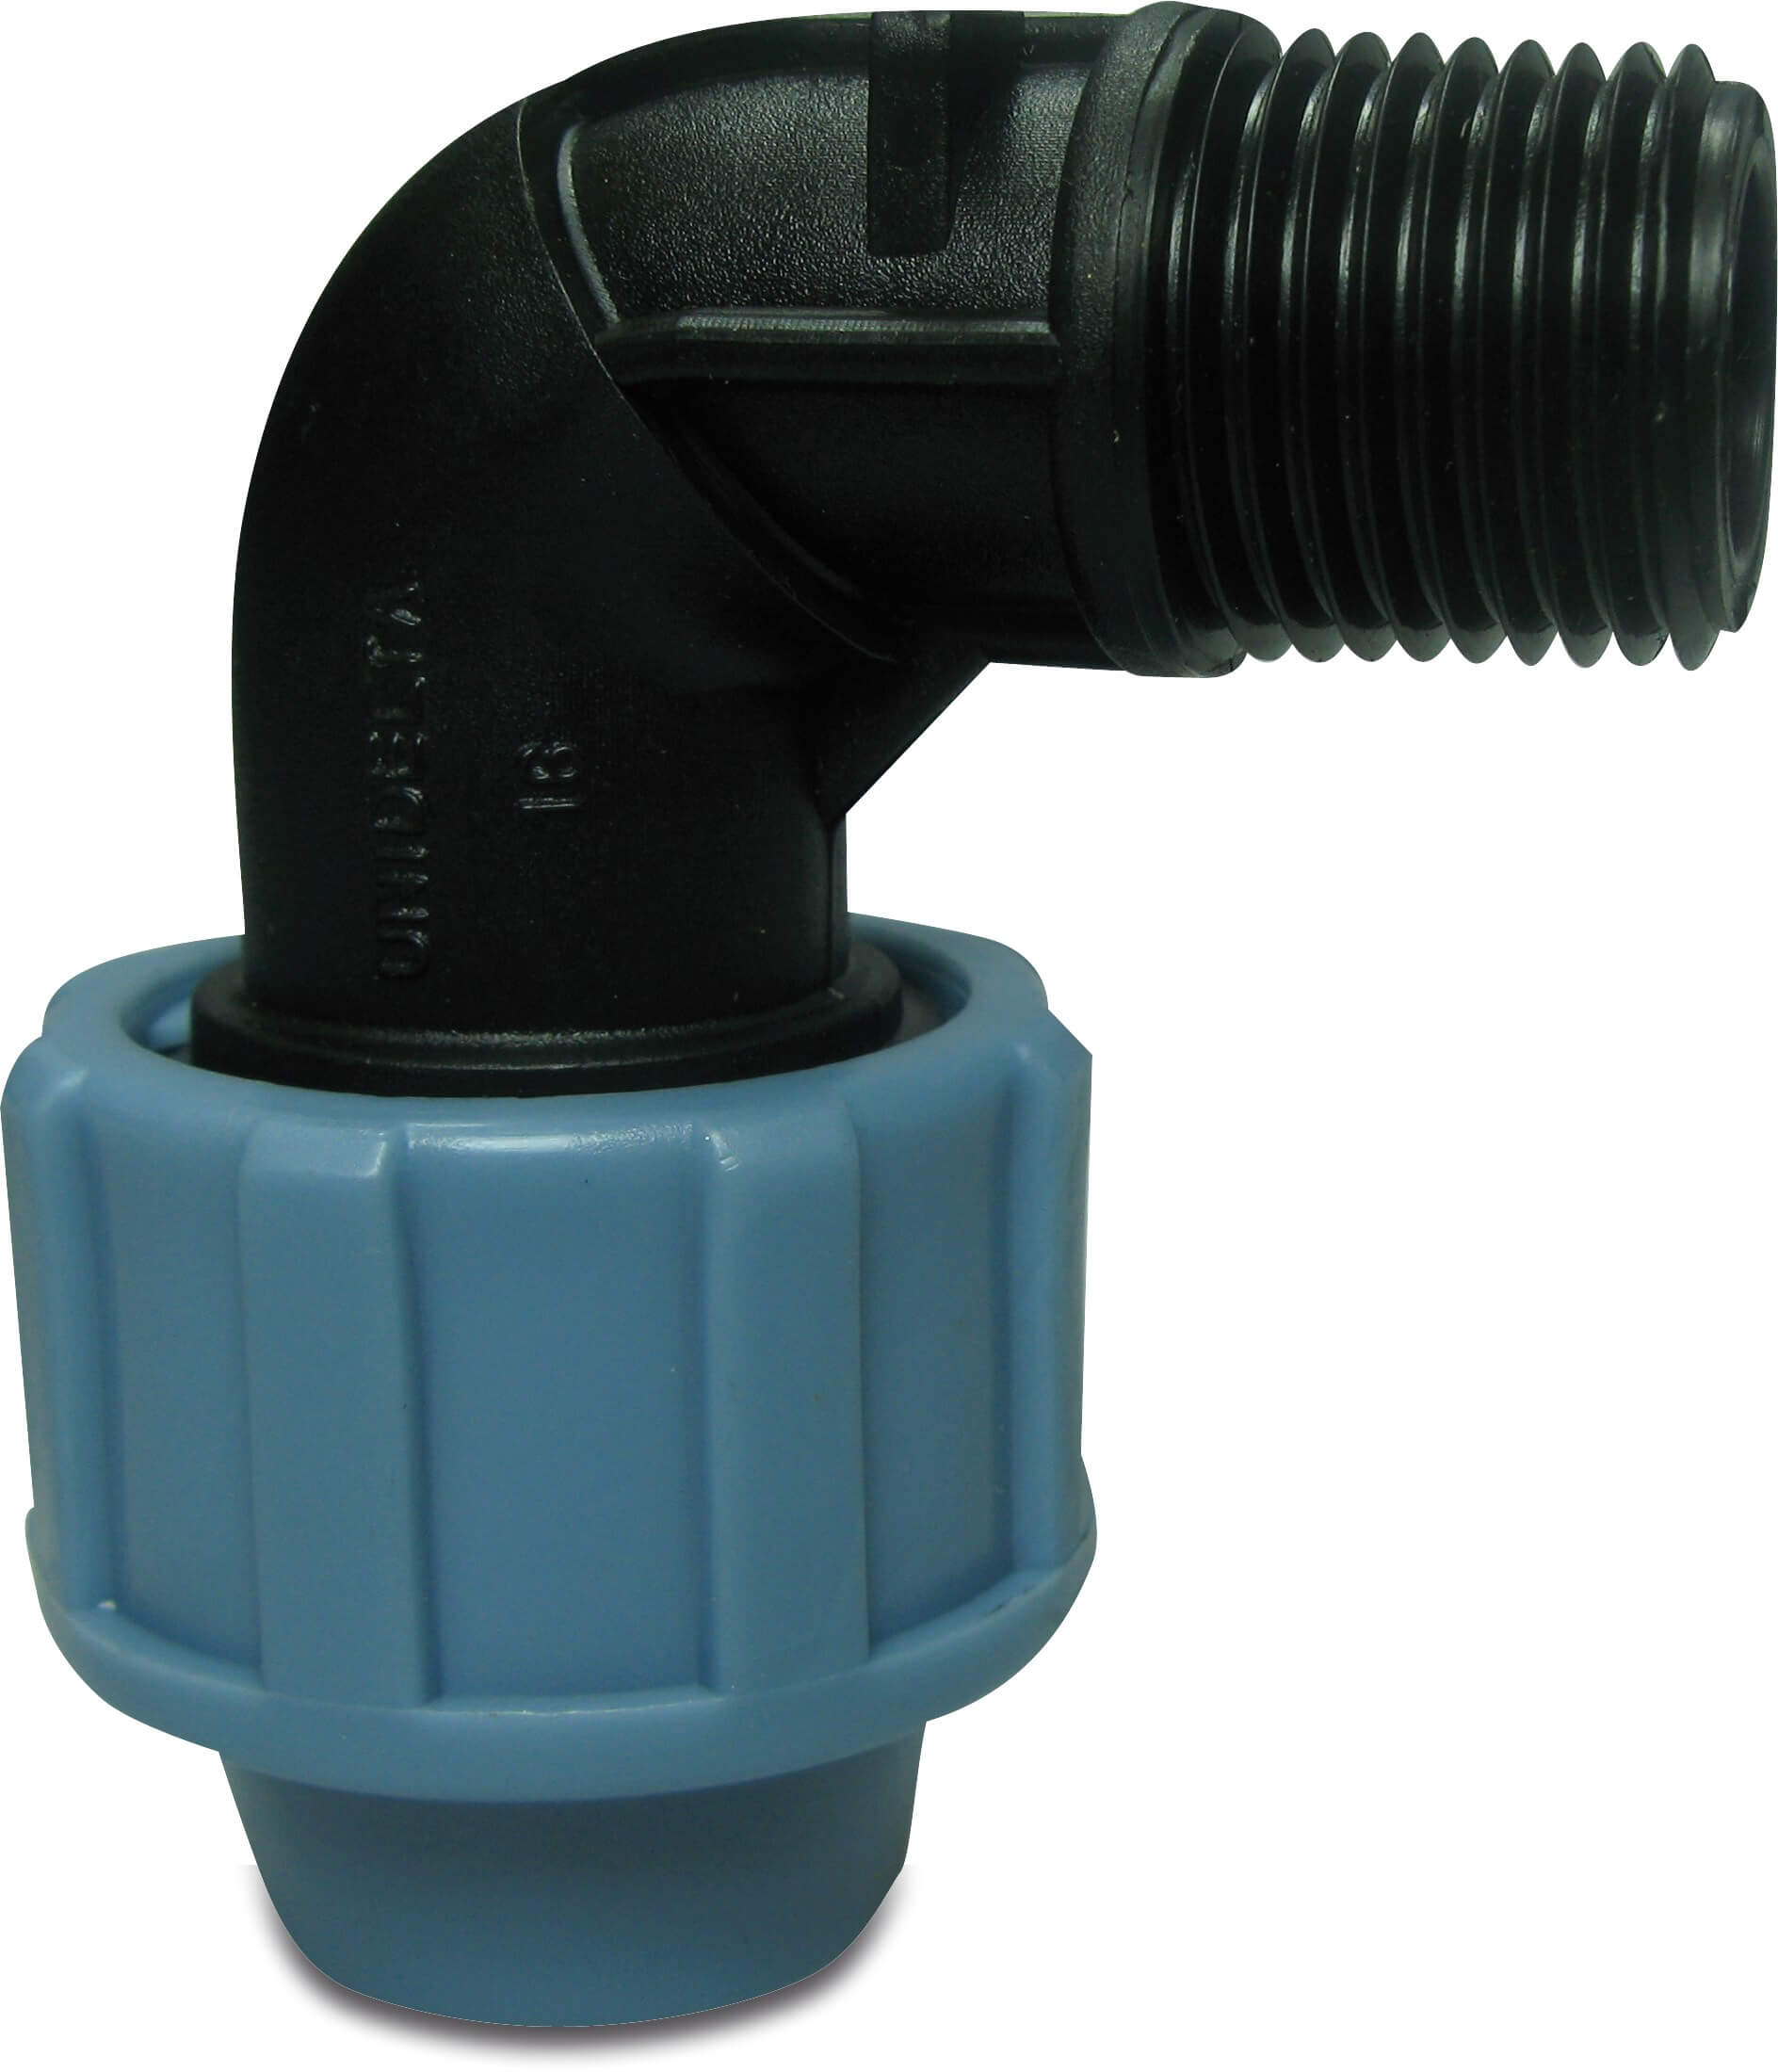 Unidelta Adaptor elbow 90° PP 16 mm x 1/2" compression x male thread 16bar black/blue DVGW/KIWA/WRAS